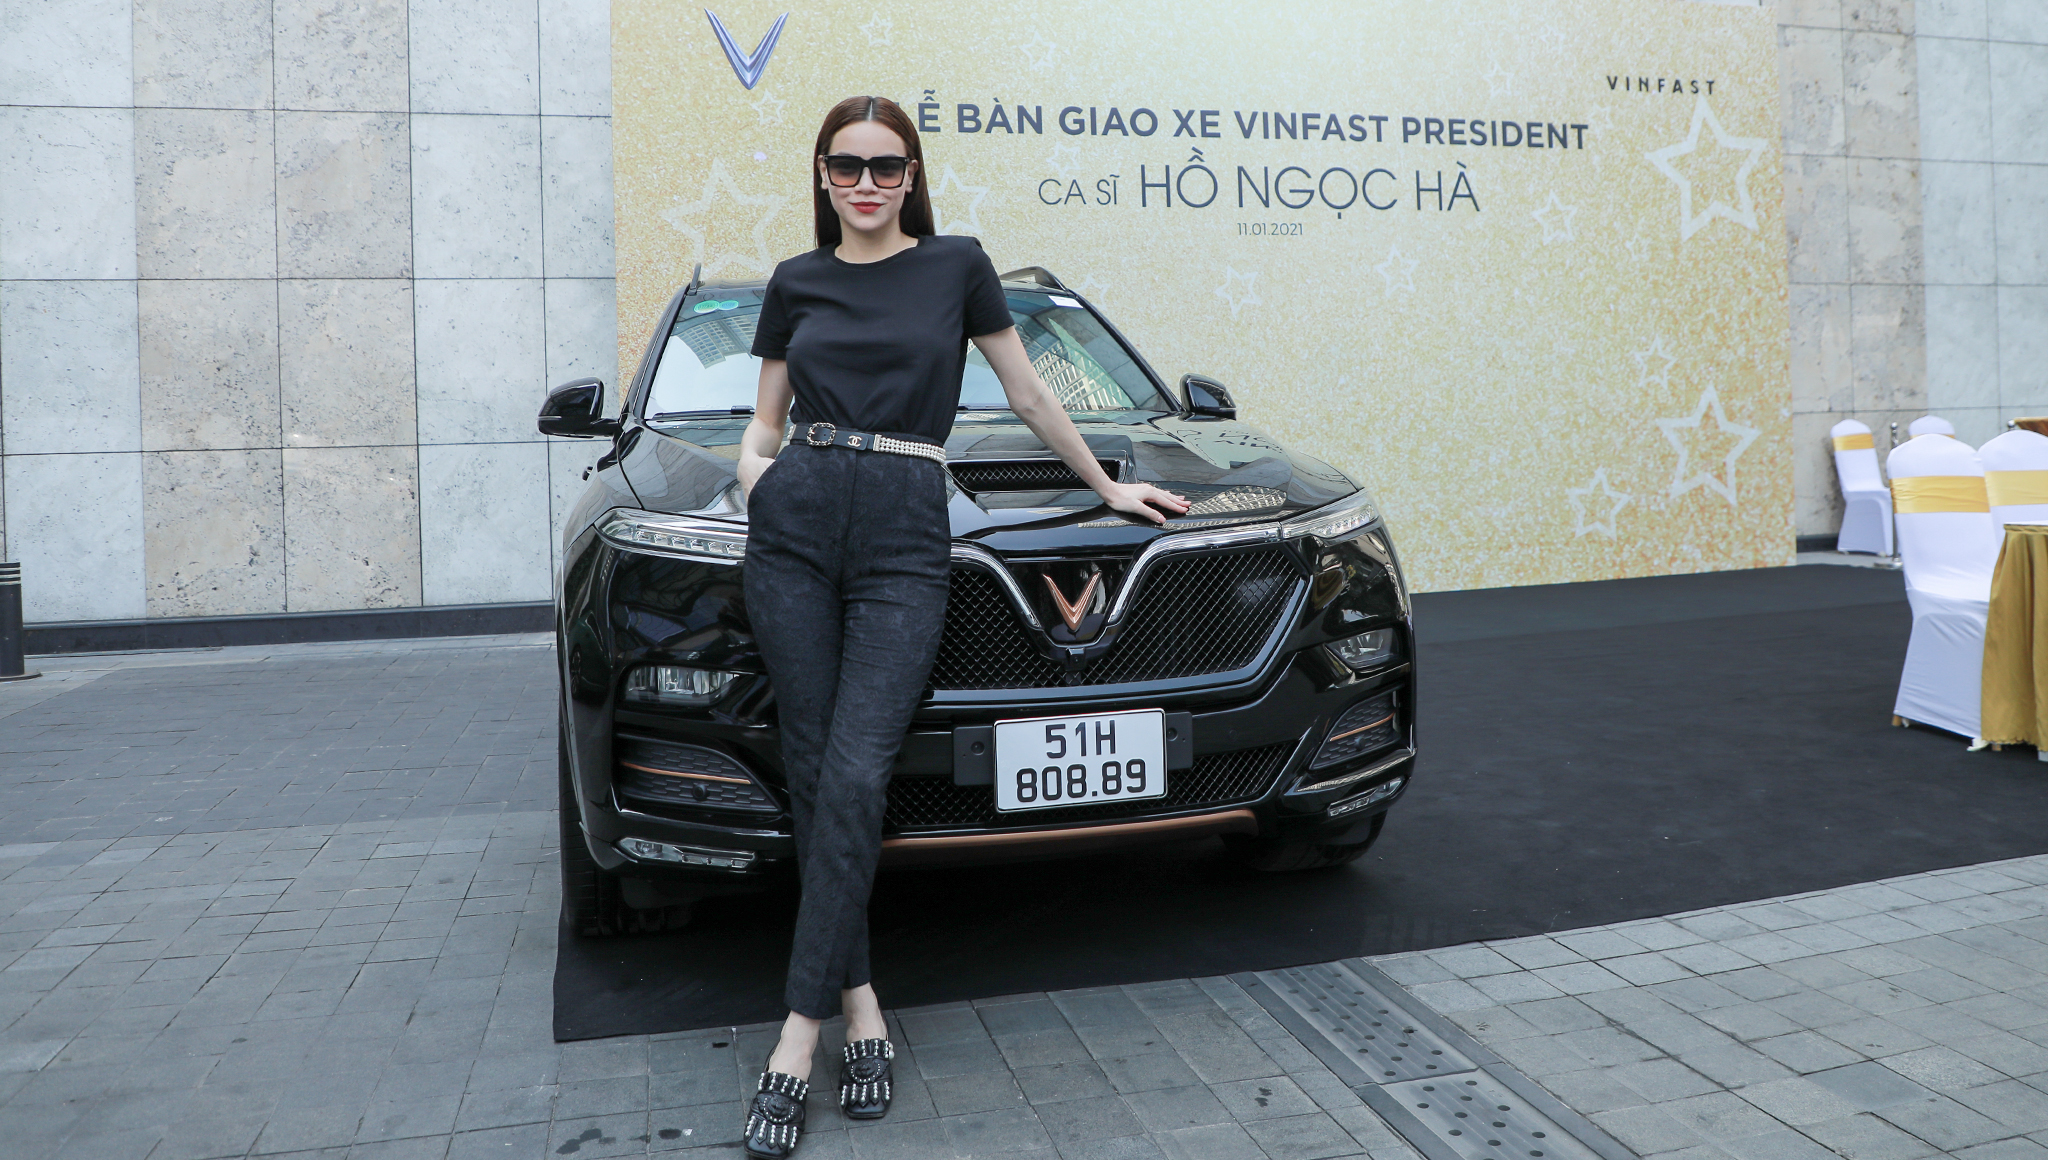 Chùm ảnh Hồ Ngọc Hà - Kim Lý nhận xe VinFast President giá 4,6 tỷ